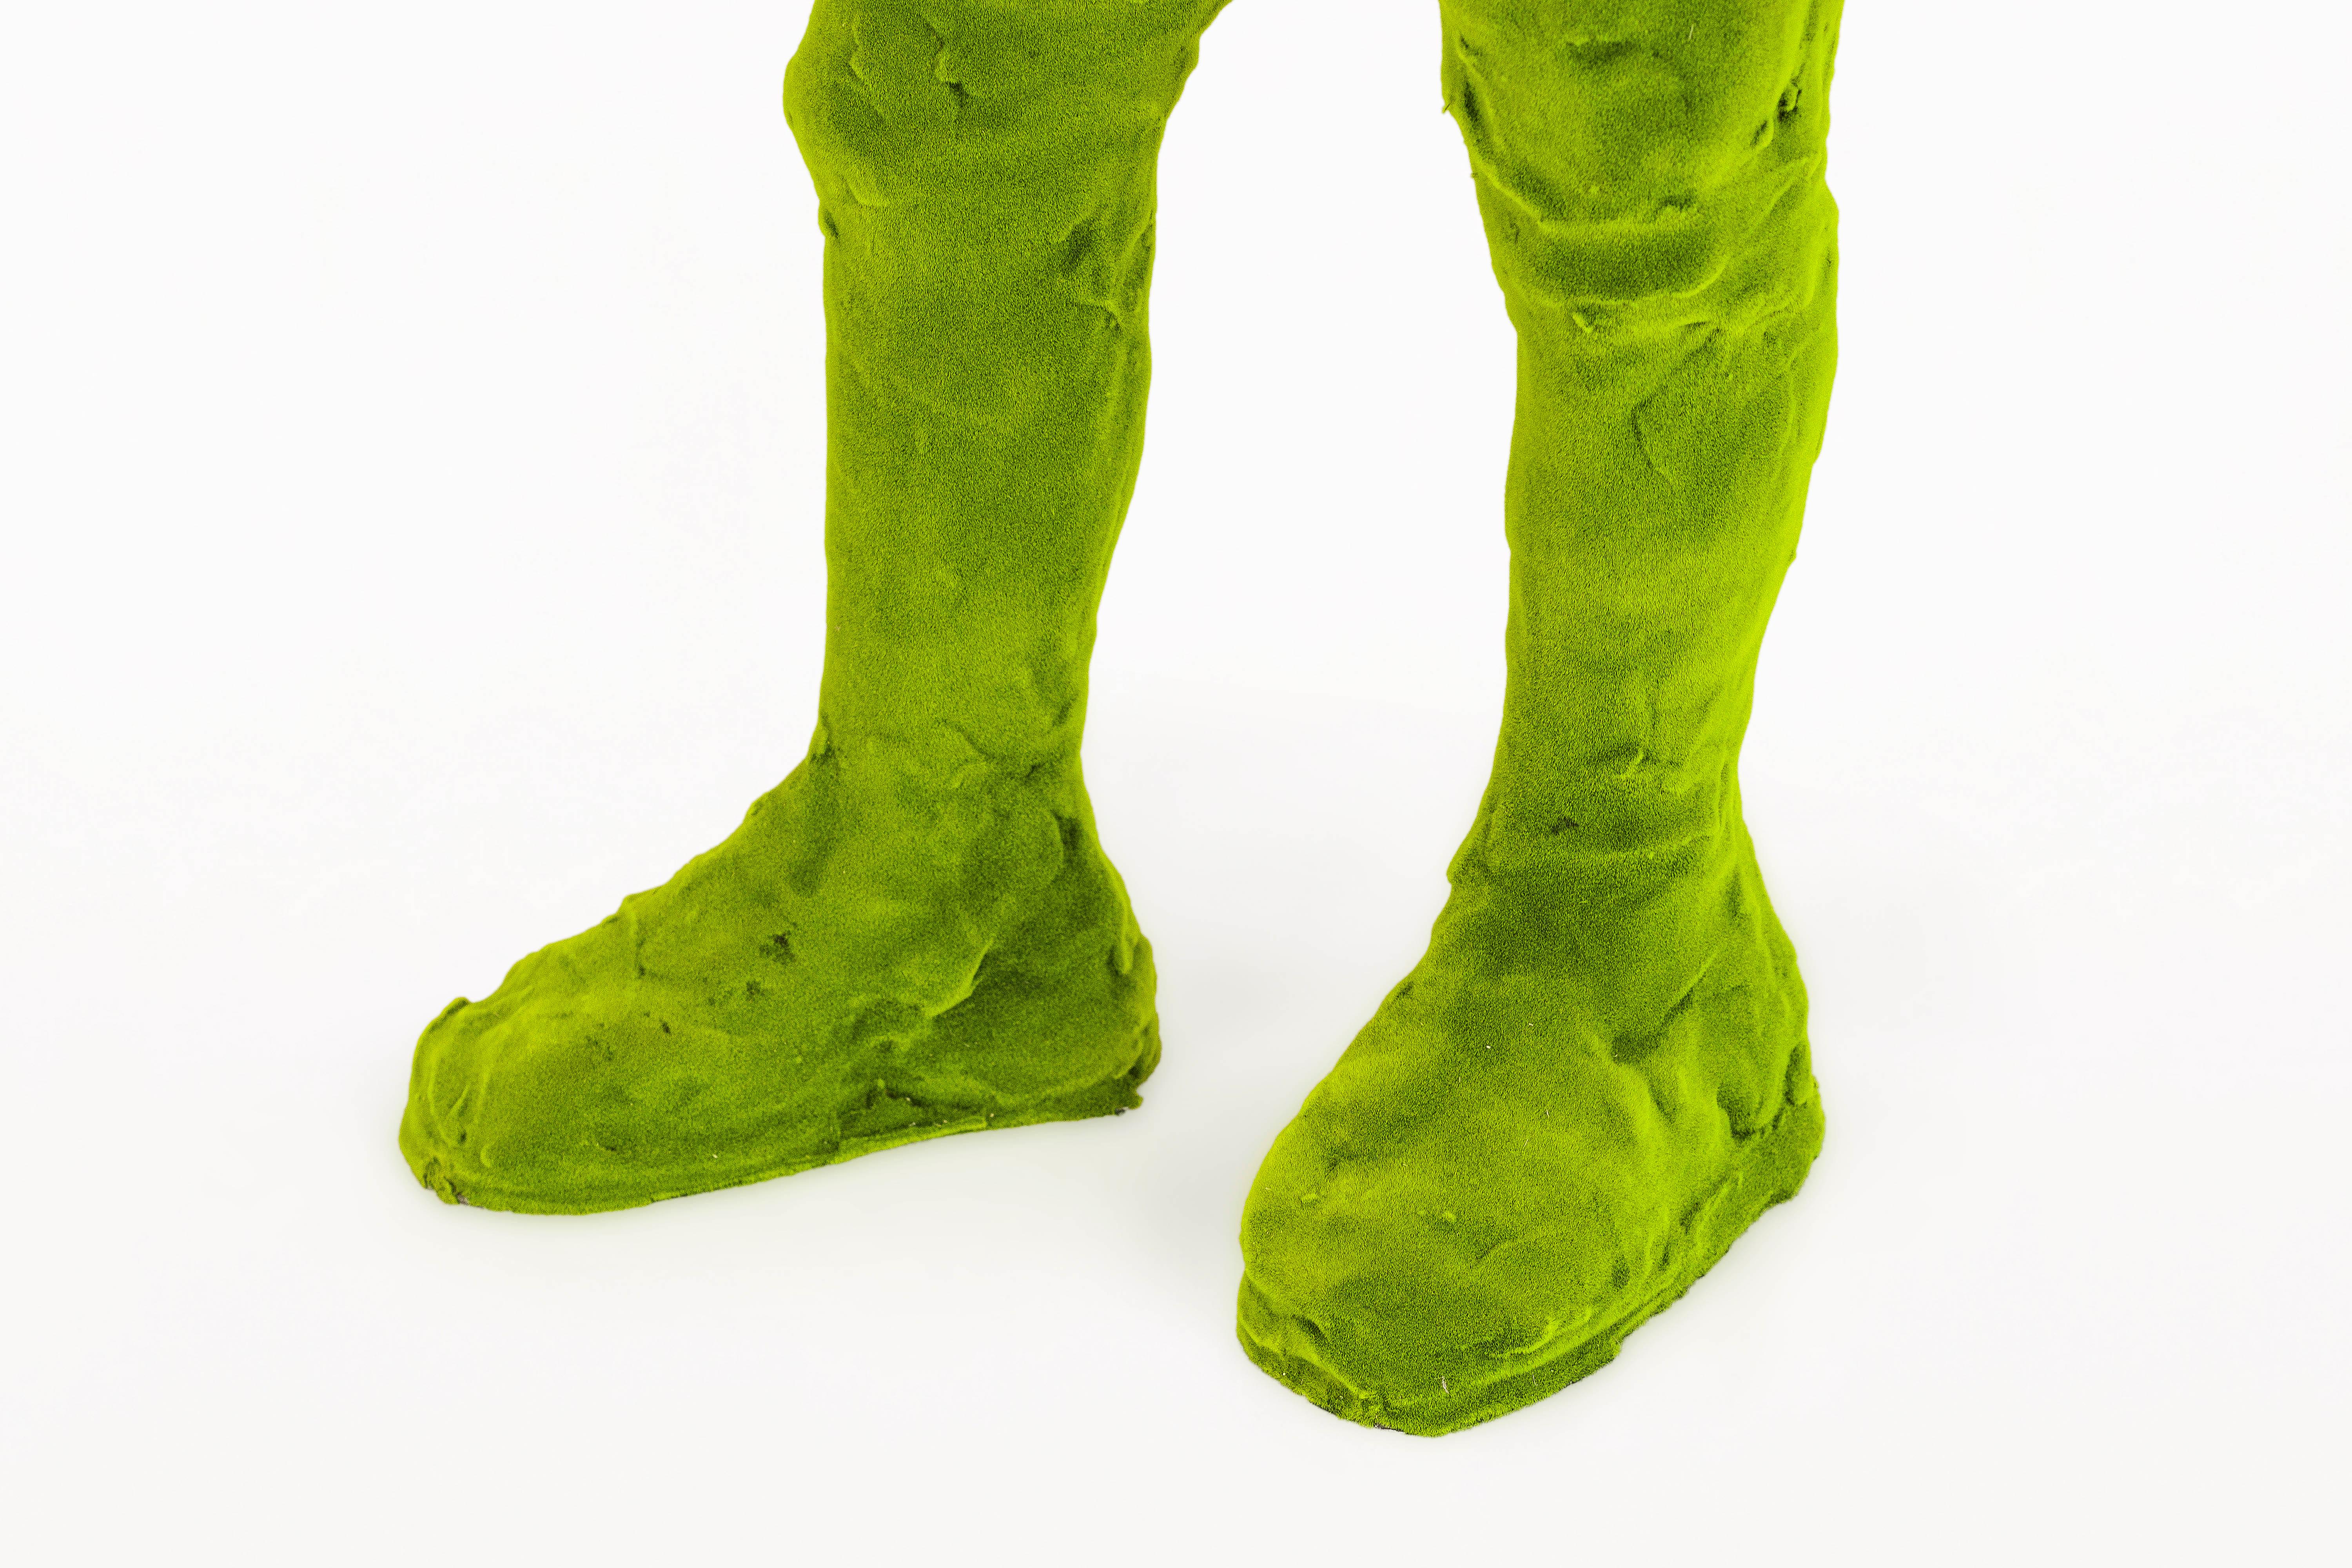 Contemporary Moss Boy Sculpture by Kim Simonsson, circa 2020, Finland